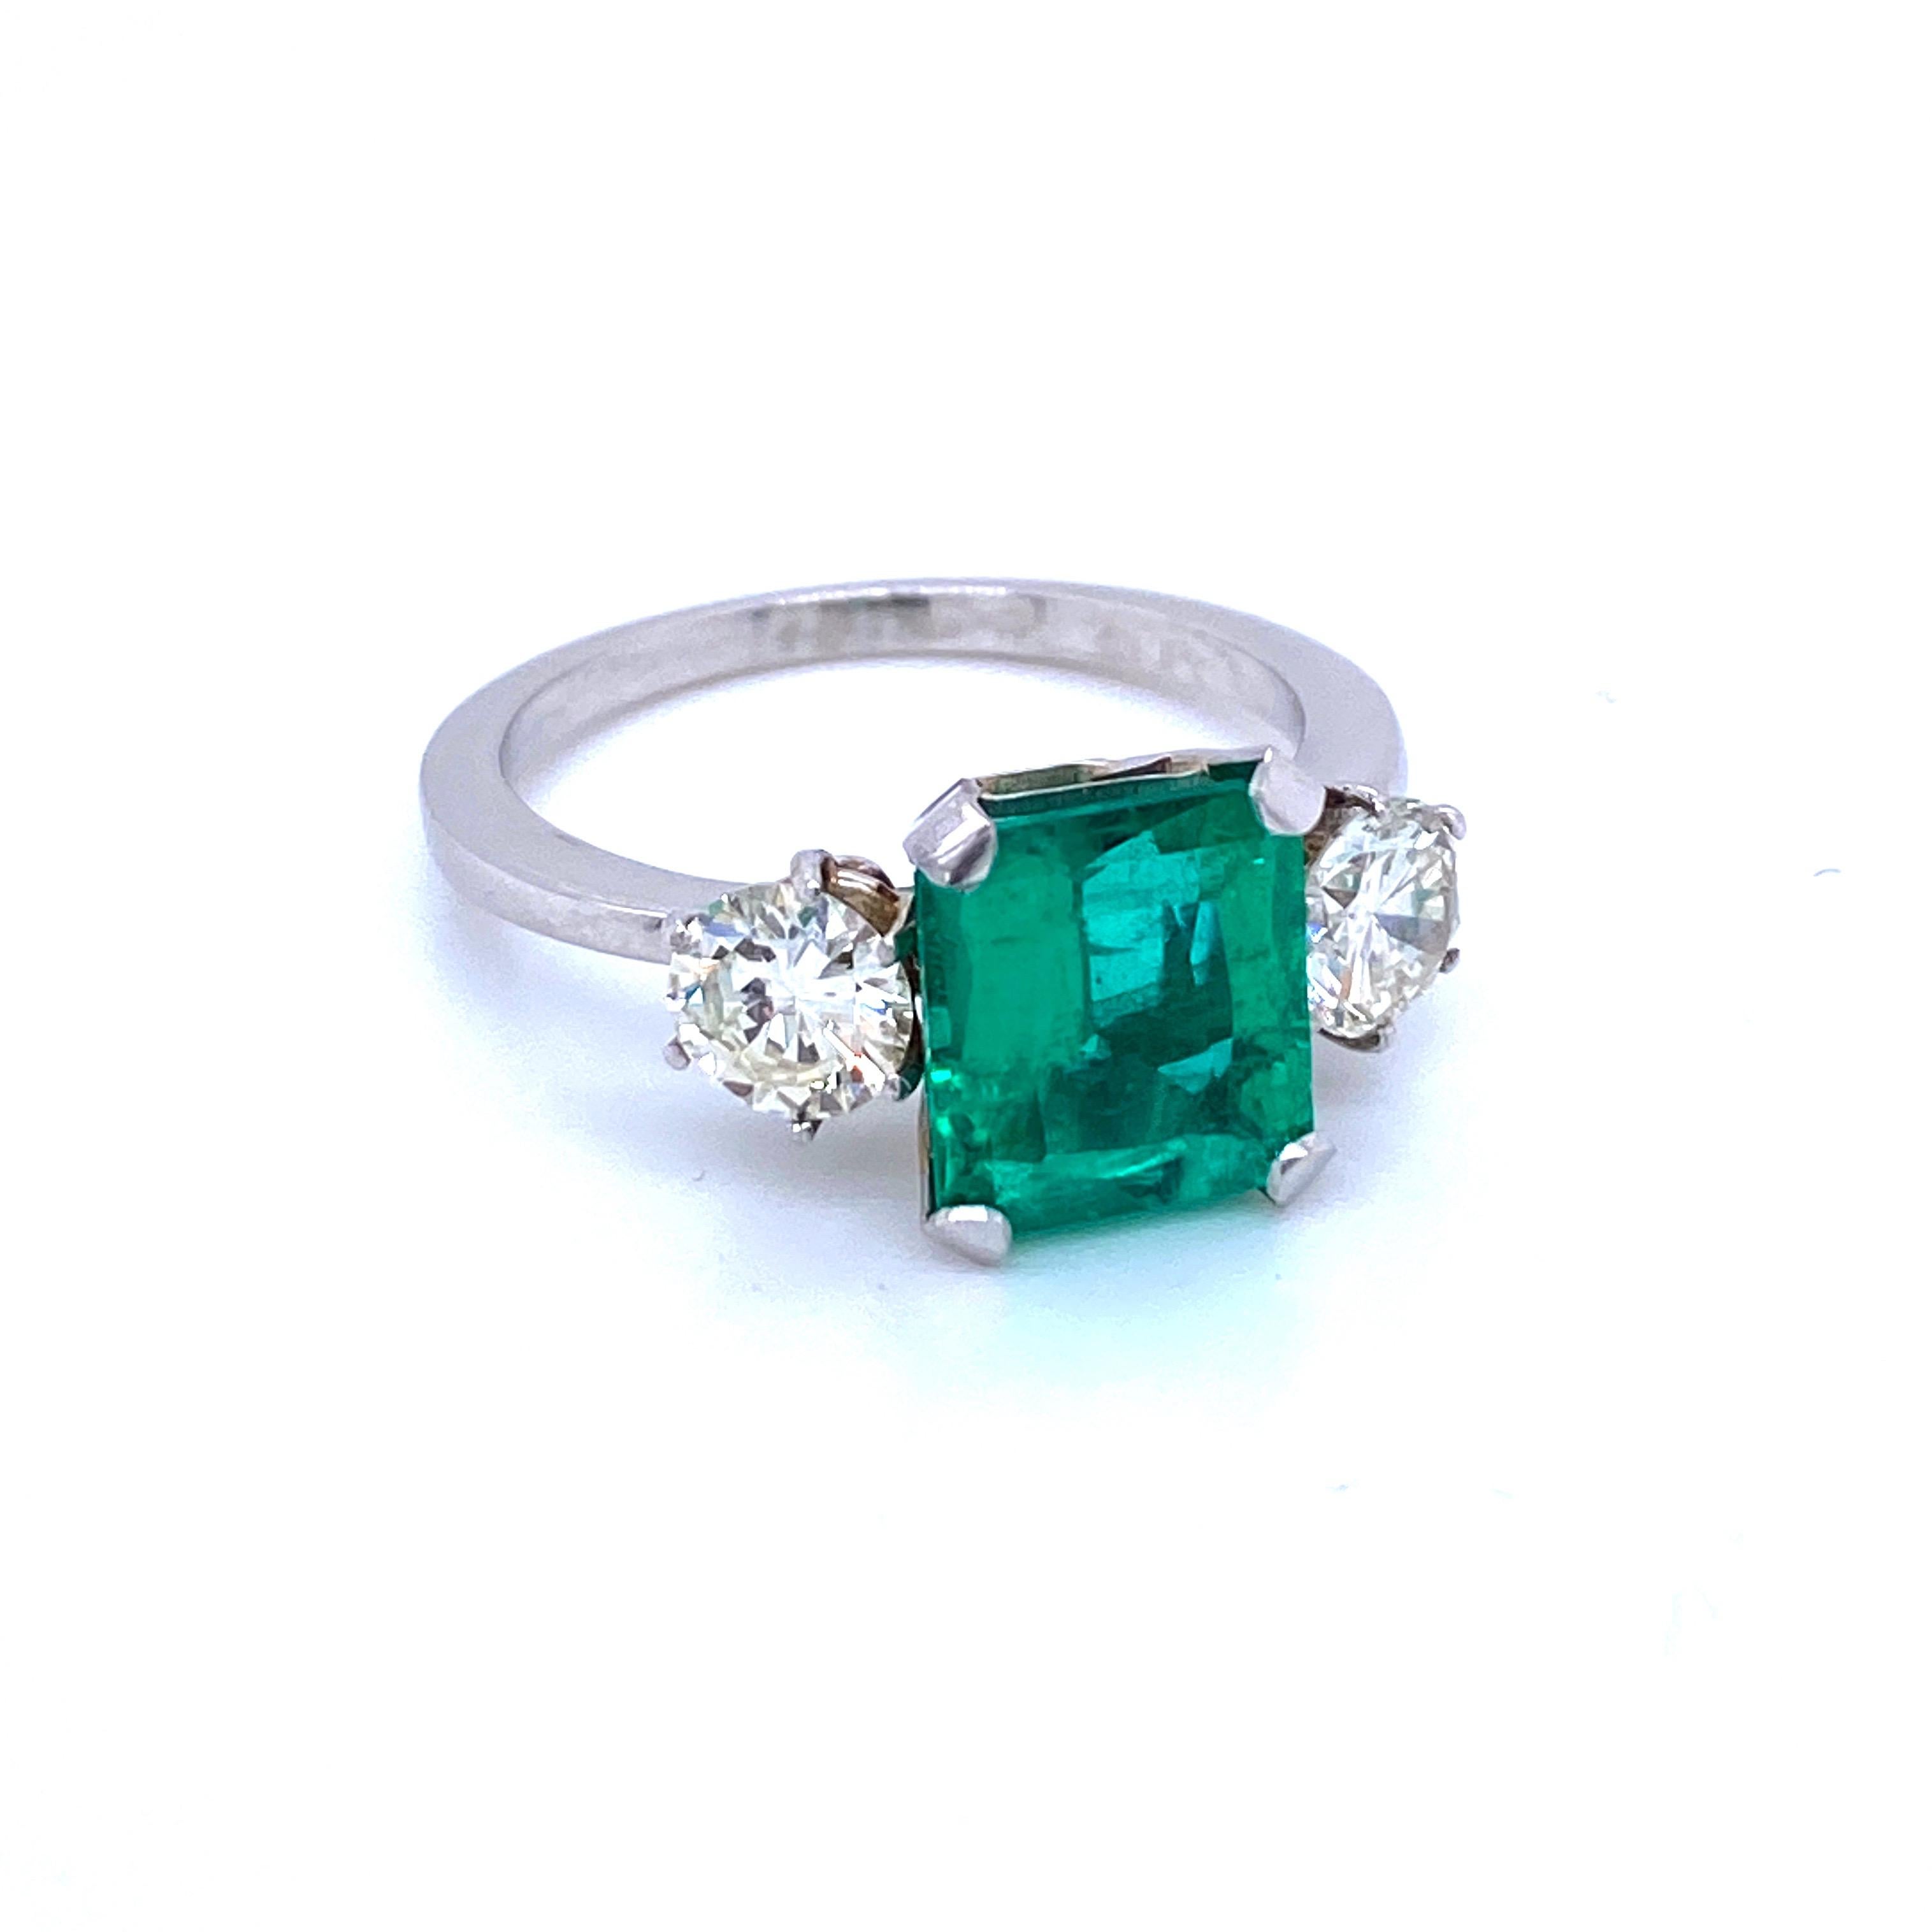 Une magnifique bague de fiançailles en platine mettant en valeur une émeraude colombienne naturelle certifiée vert vif d'environ 2,75 carats de grande qualité, entourée d'environ 1,10 carat de diamants de taille ancienne classés I couleur